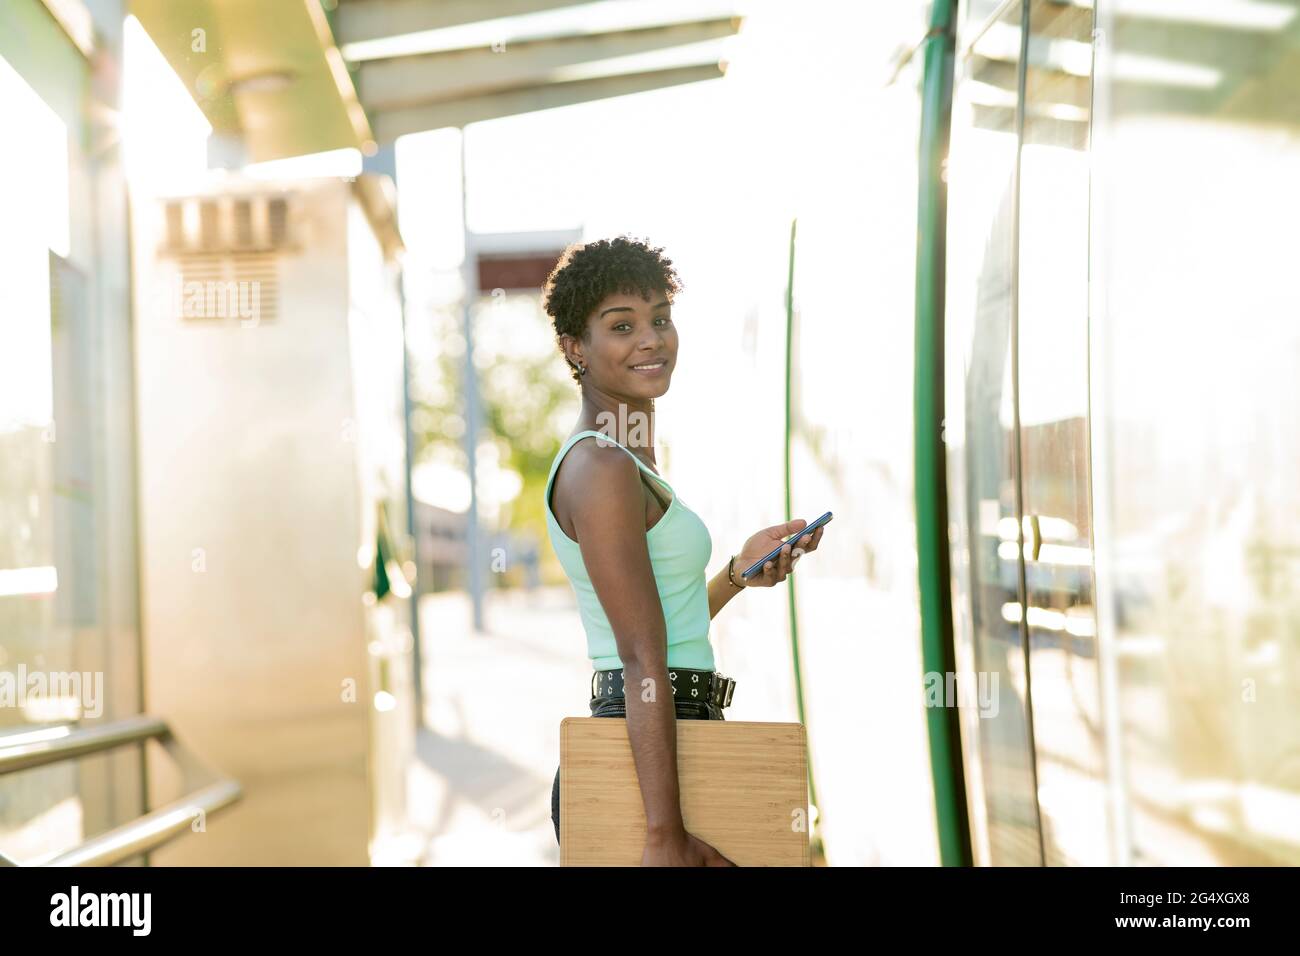 Junge junge Frau, die mit drahtlosen Technologien am Straßenbahneingang steht Stockfoto